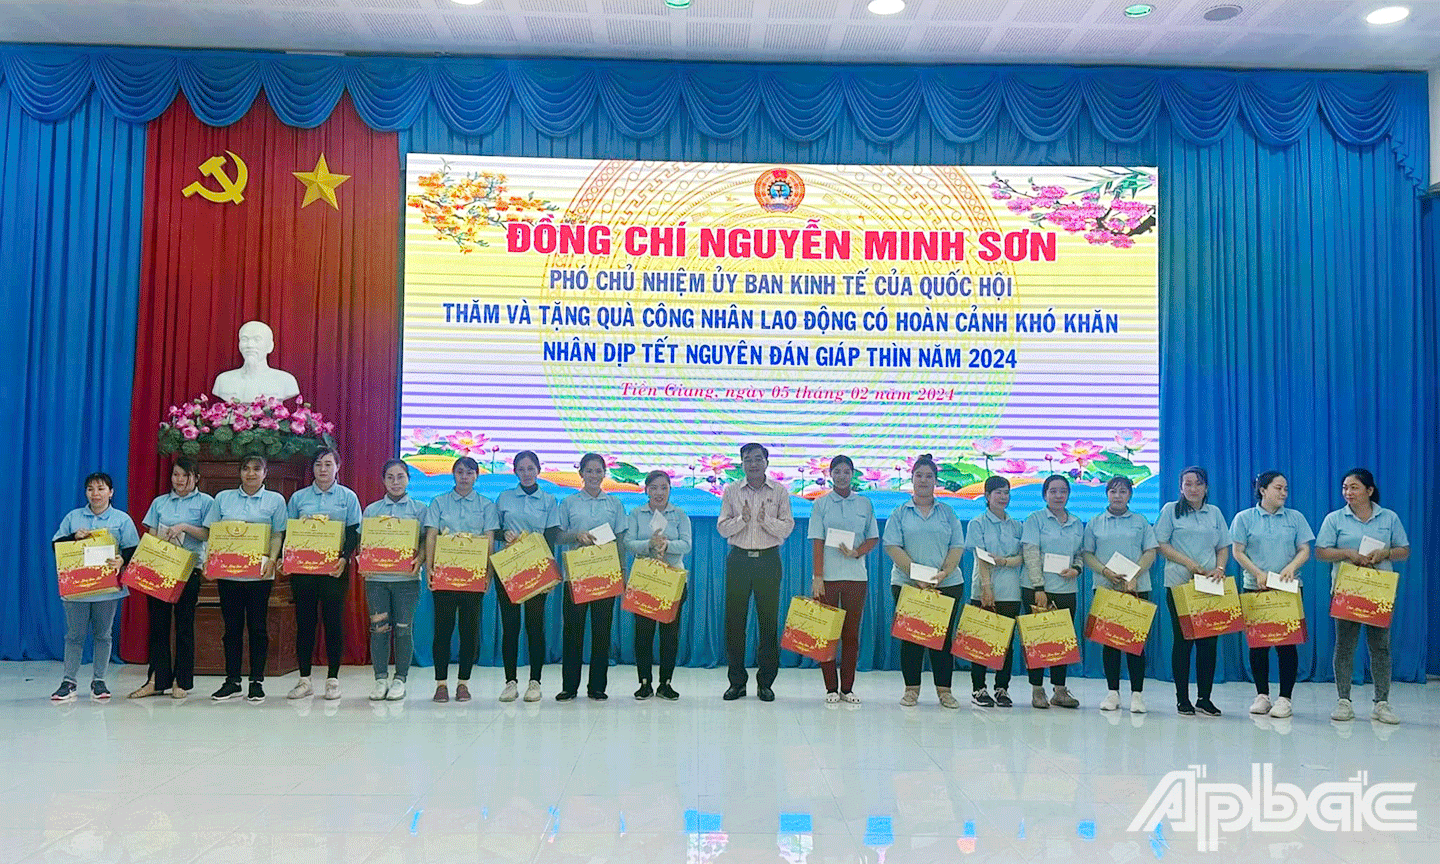 Đồng chí Nguyễn Minh Sơn Phó Chủ nhiệm Ủy ban kinh tế của Quốc hội tặng quà tết cho công nhân lao động khó khăn